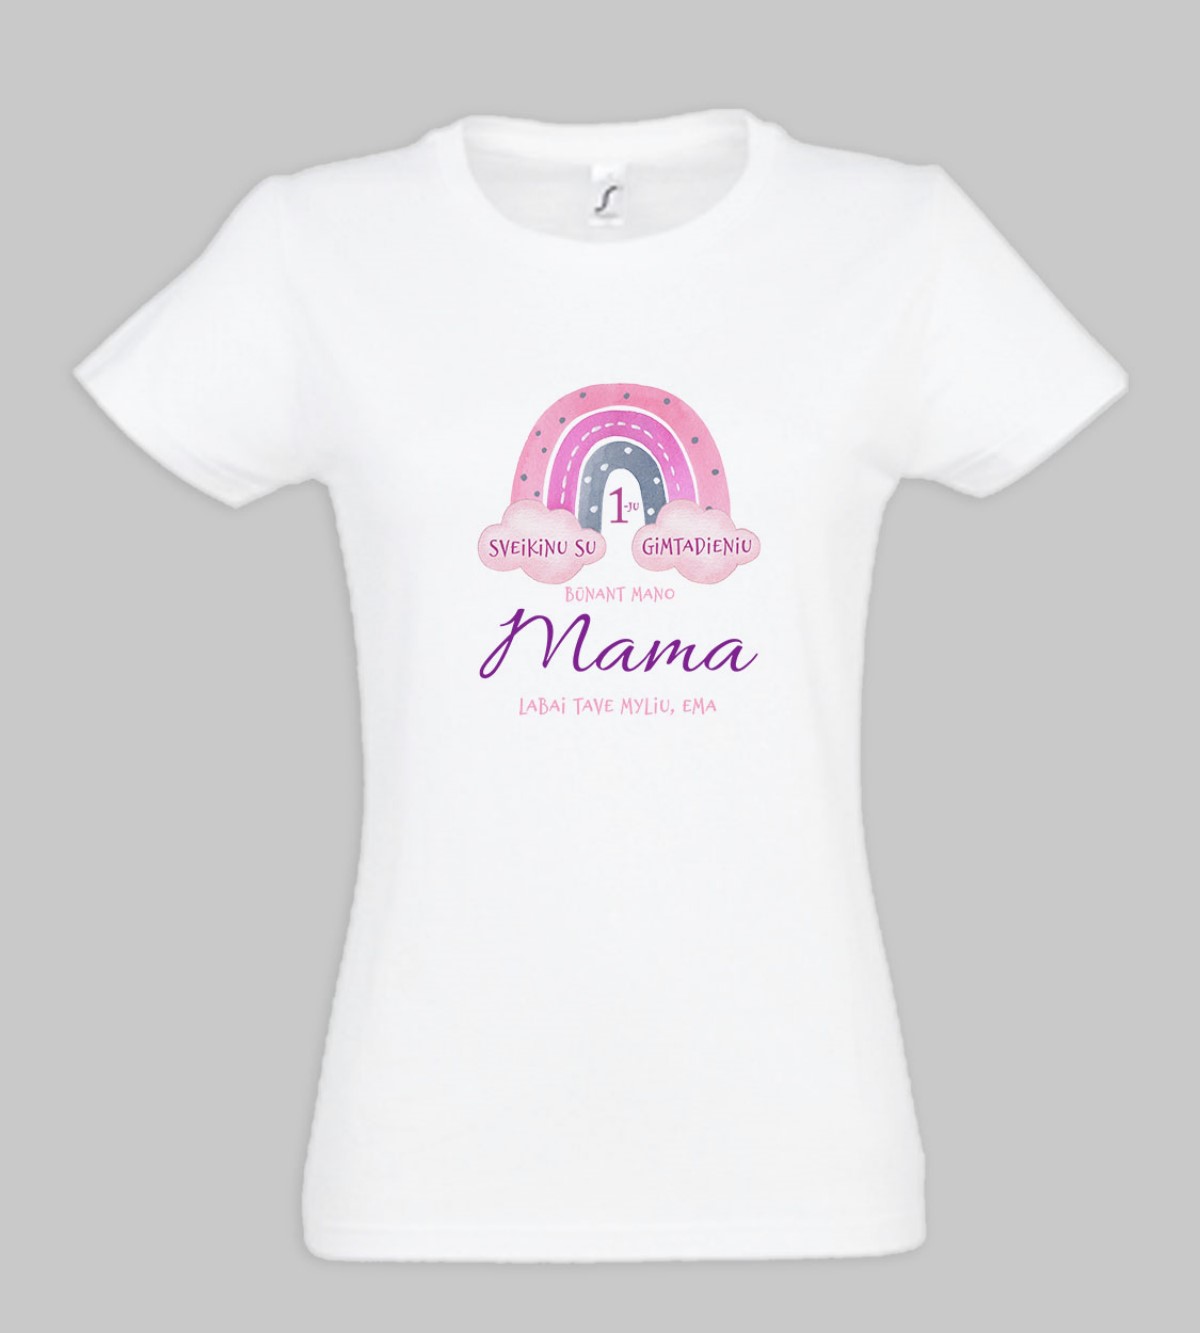 Marškinėliai „Sveikinu su 1 gimtadieniu būnant mano Mama“